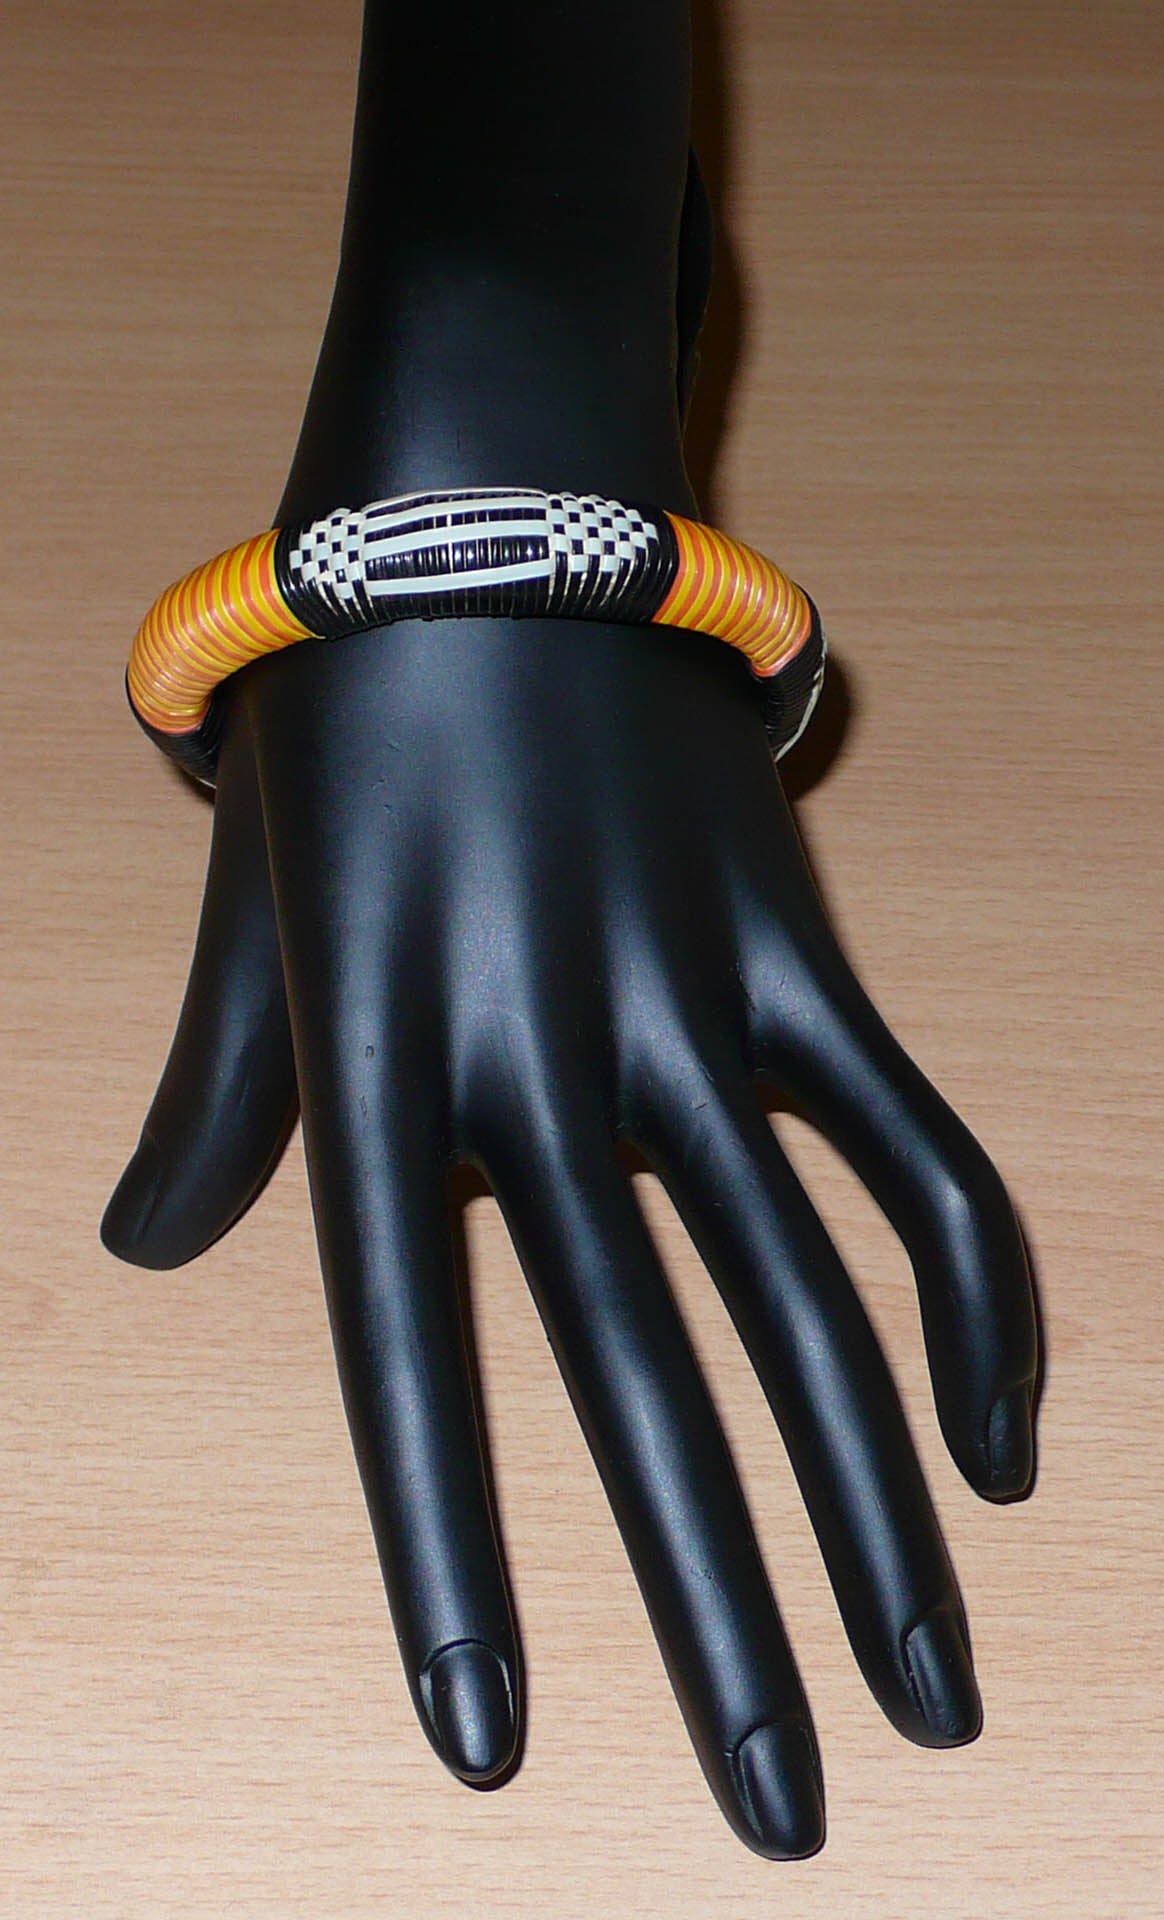 Fabriqué au Mali dans une démarche écolo friendly, ce bracelet africain se compose de motifs ethniques tissés à partir de fines bandes de plastique recyclé noir, blanc, jaune et orange. La circonférence interne du bracelet est de 20 cm, son diamètre de 6,5 cm pour une épaisseur de 1,3 cm.